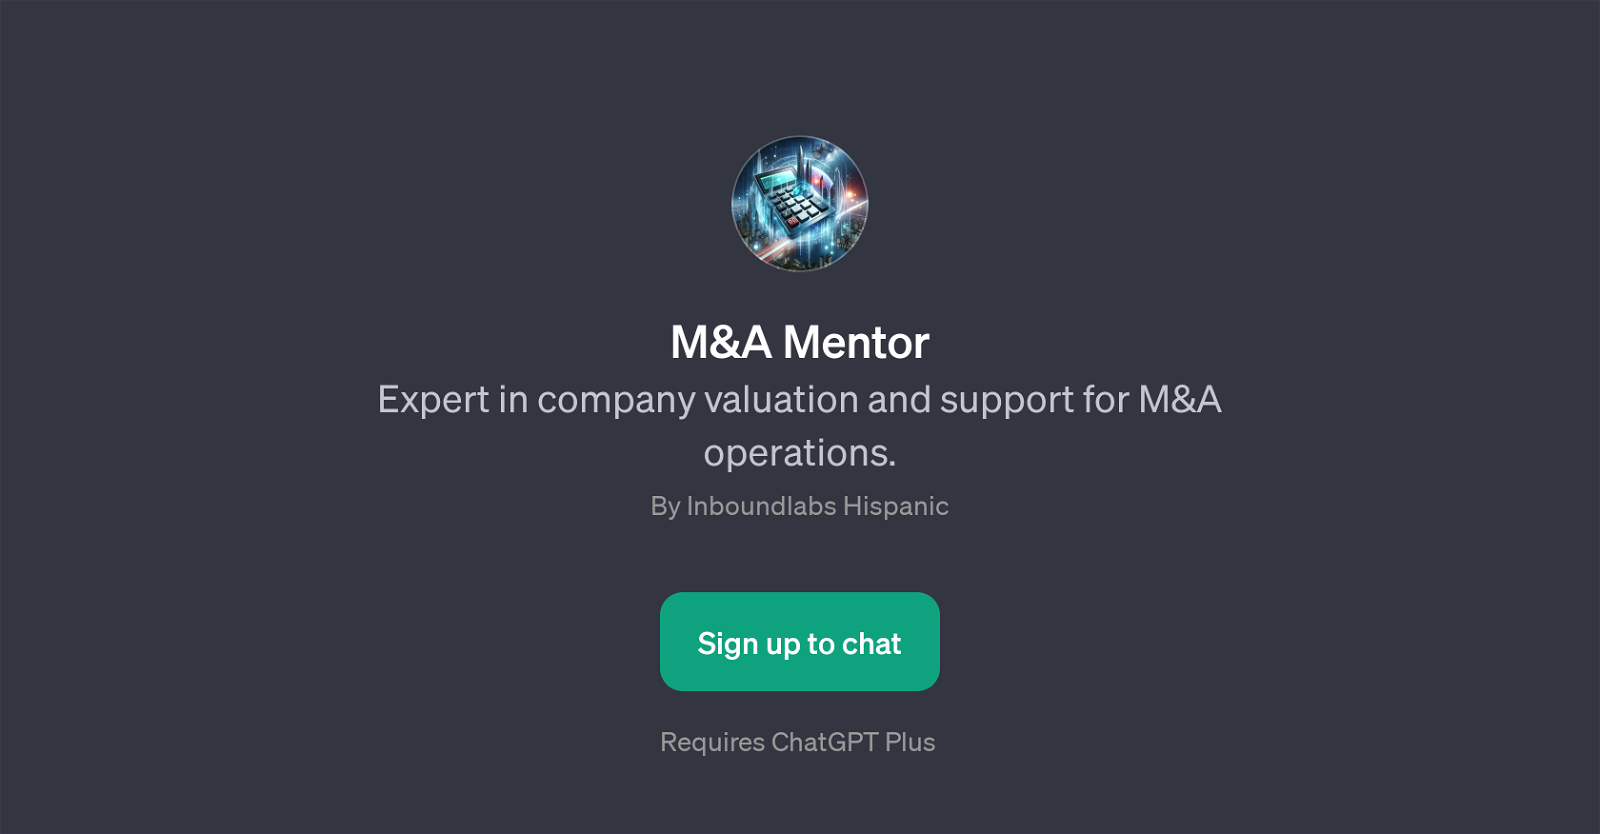 M&A Mentor website